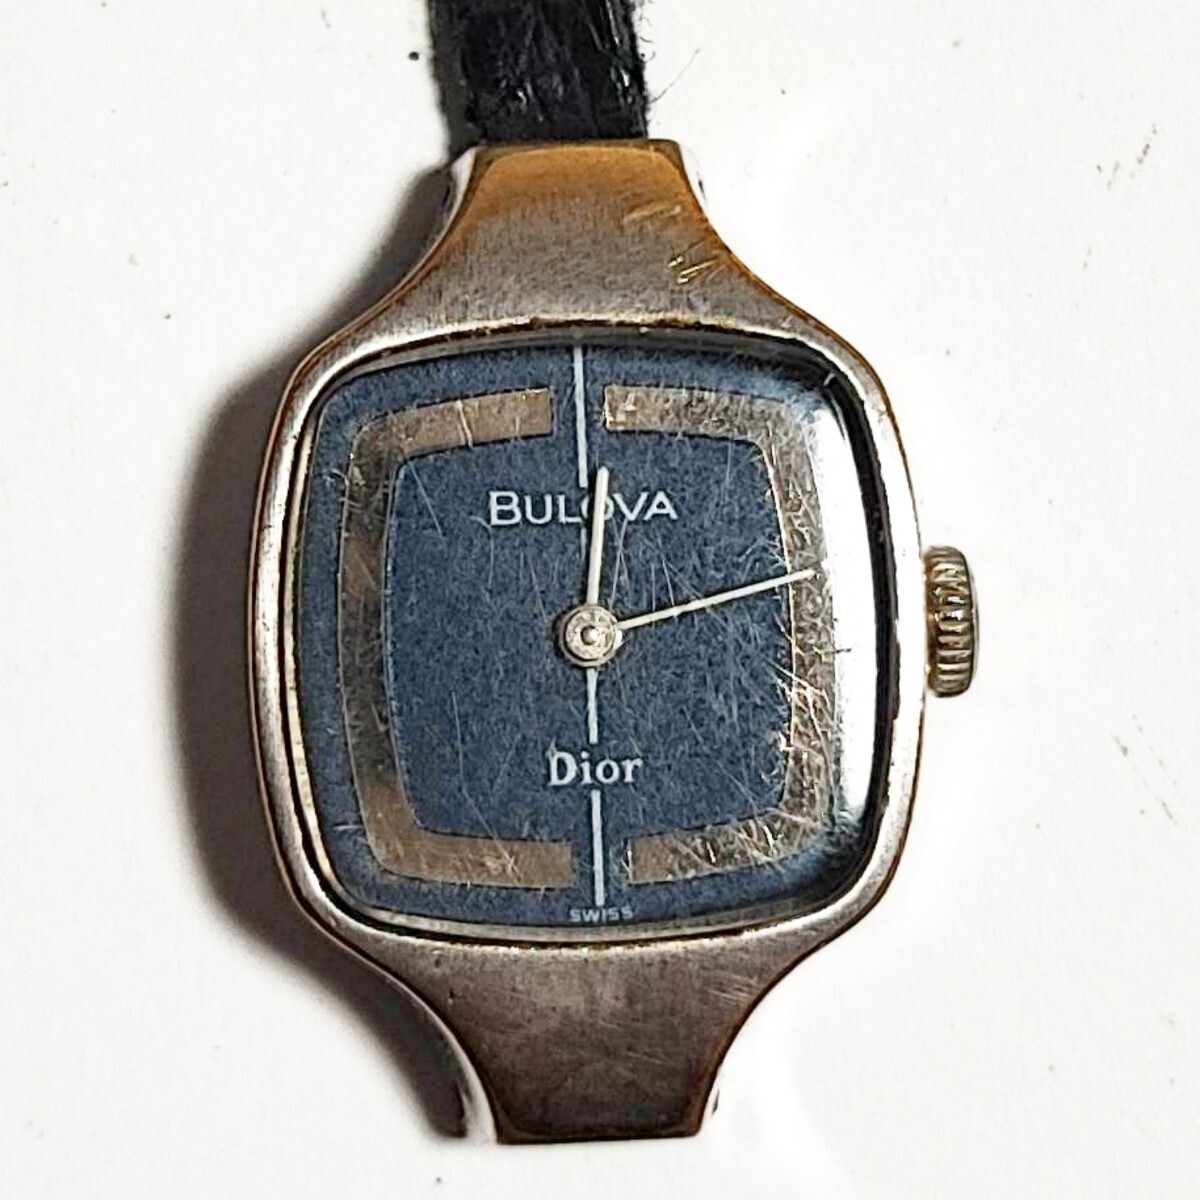 動作品 Dior BULOVA ダブルネーム ディオール ブローバ レディース腕時計 機械式 ヴィンテージ 手巻き式 稼働品 Q015